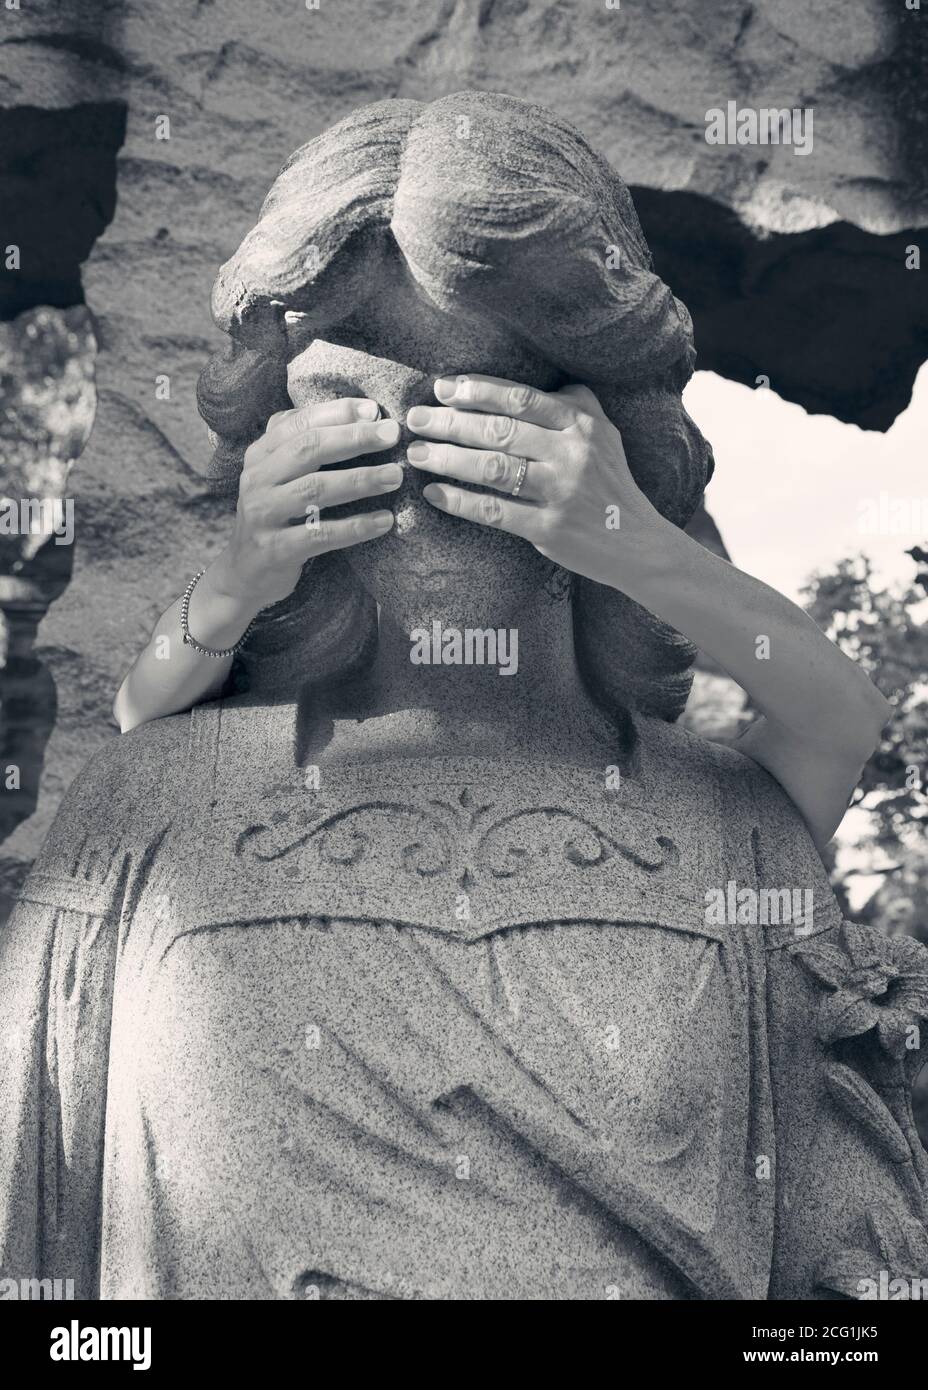 Die Hände einer Frau bedecken die Augen eines Friedhofsengels Statue Stockfoto